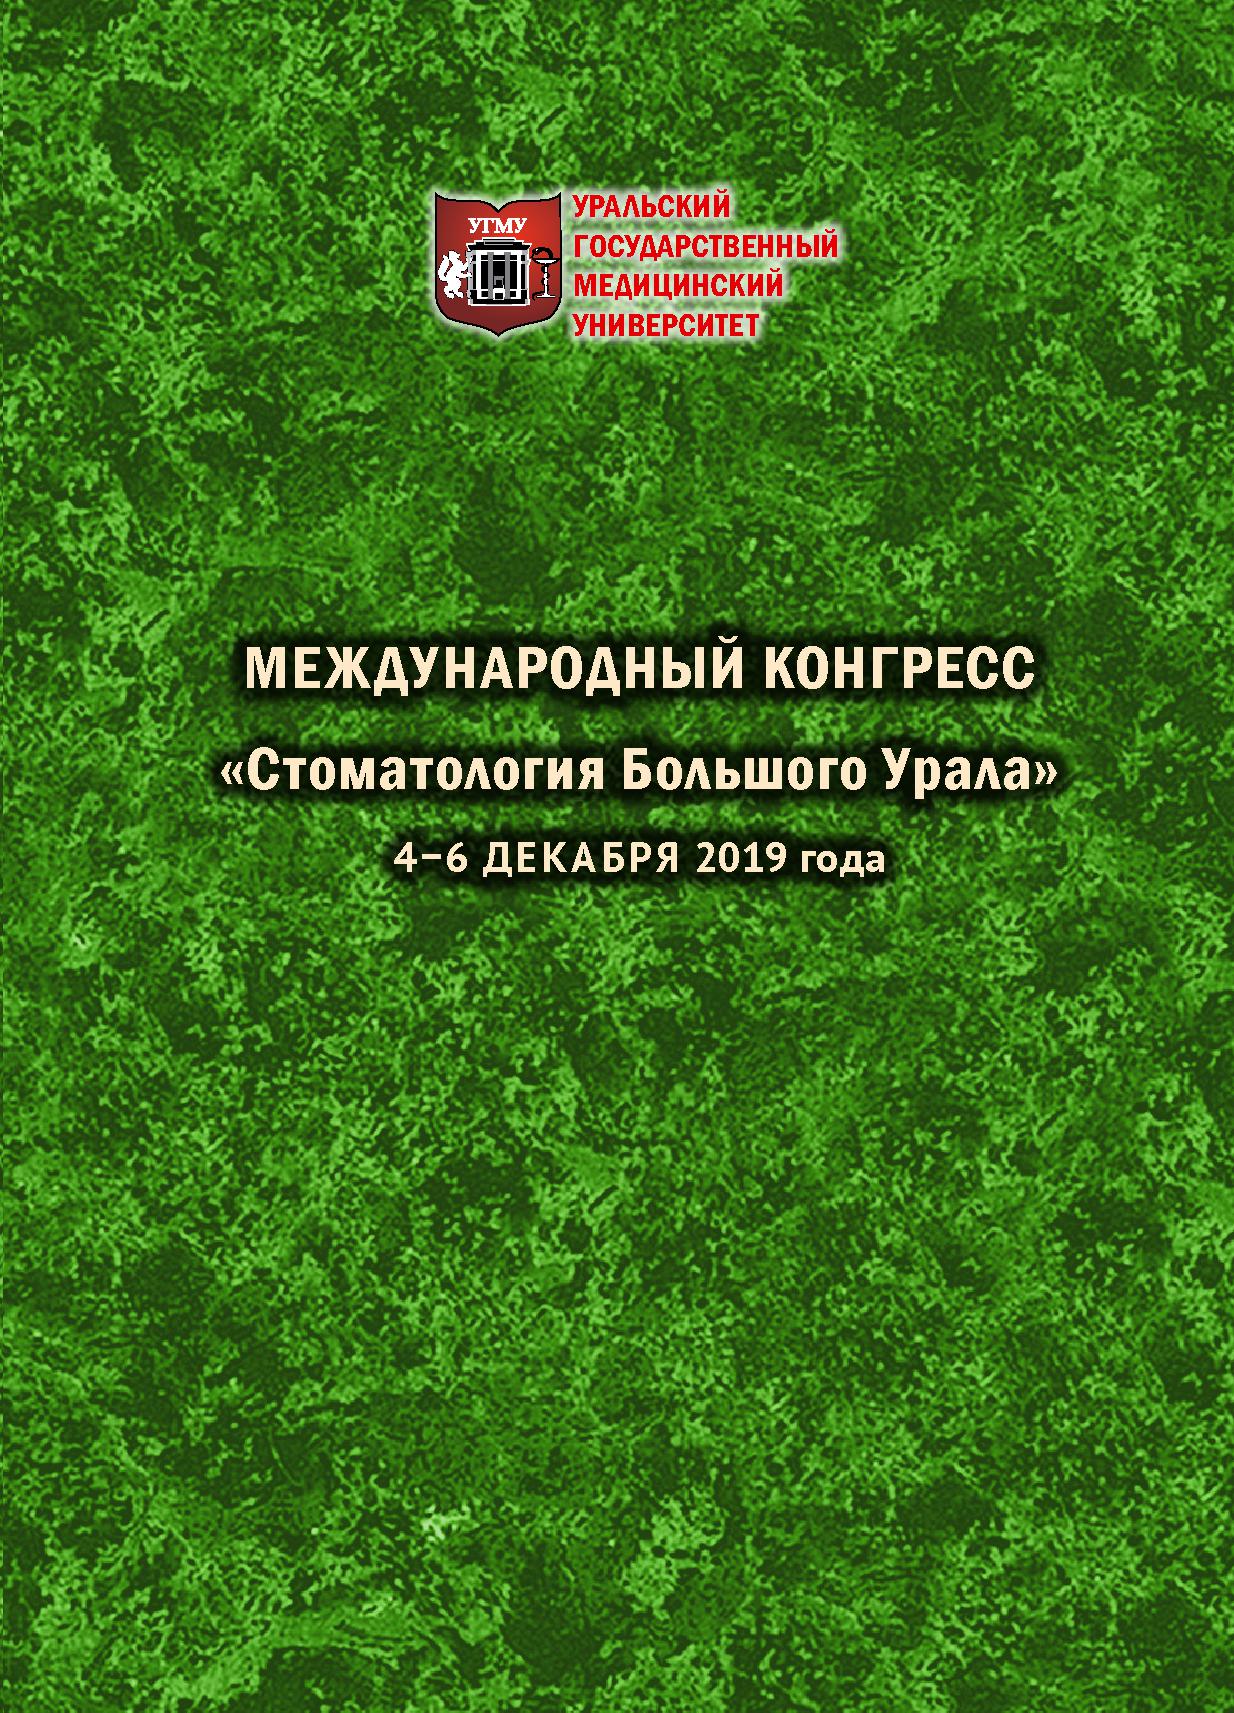             Материалы Международного конгресса  «Стоматология Большого Урала» 4-6 декабря 2019 года
    